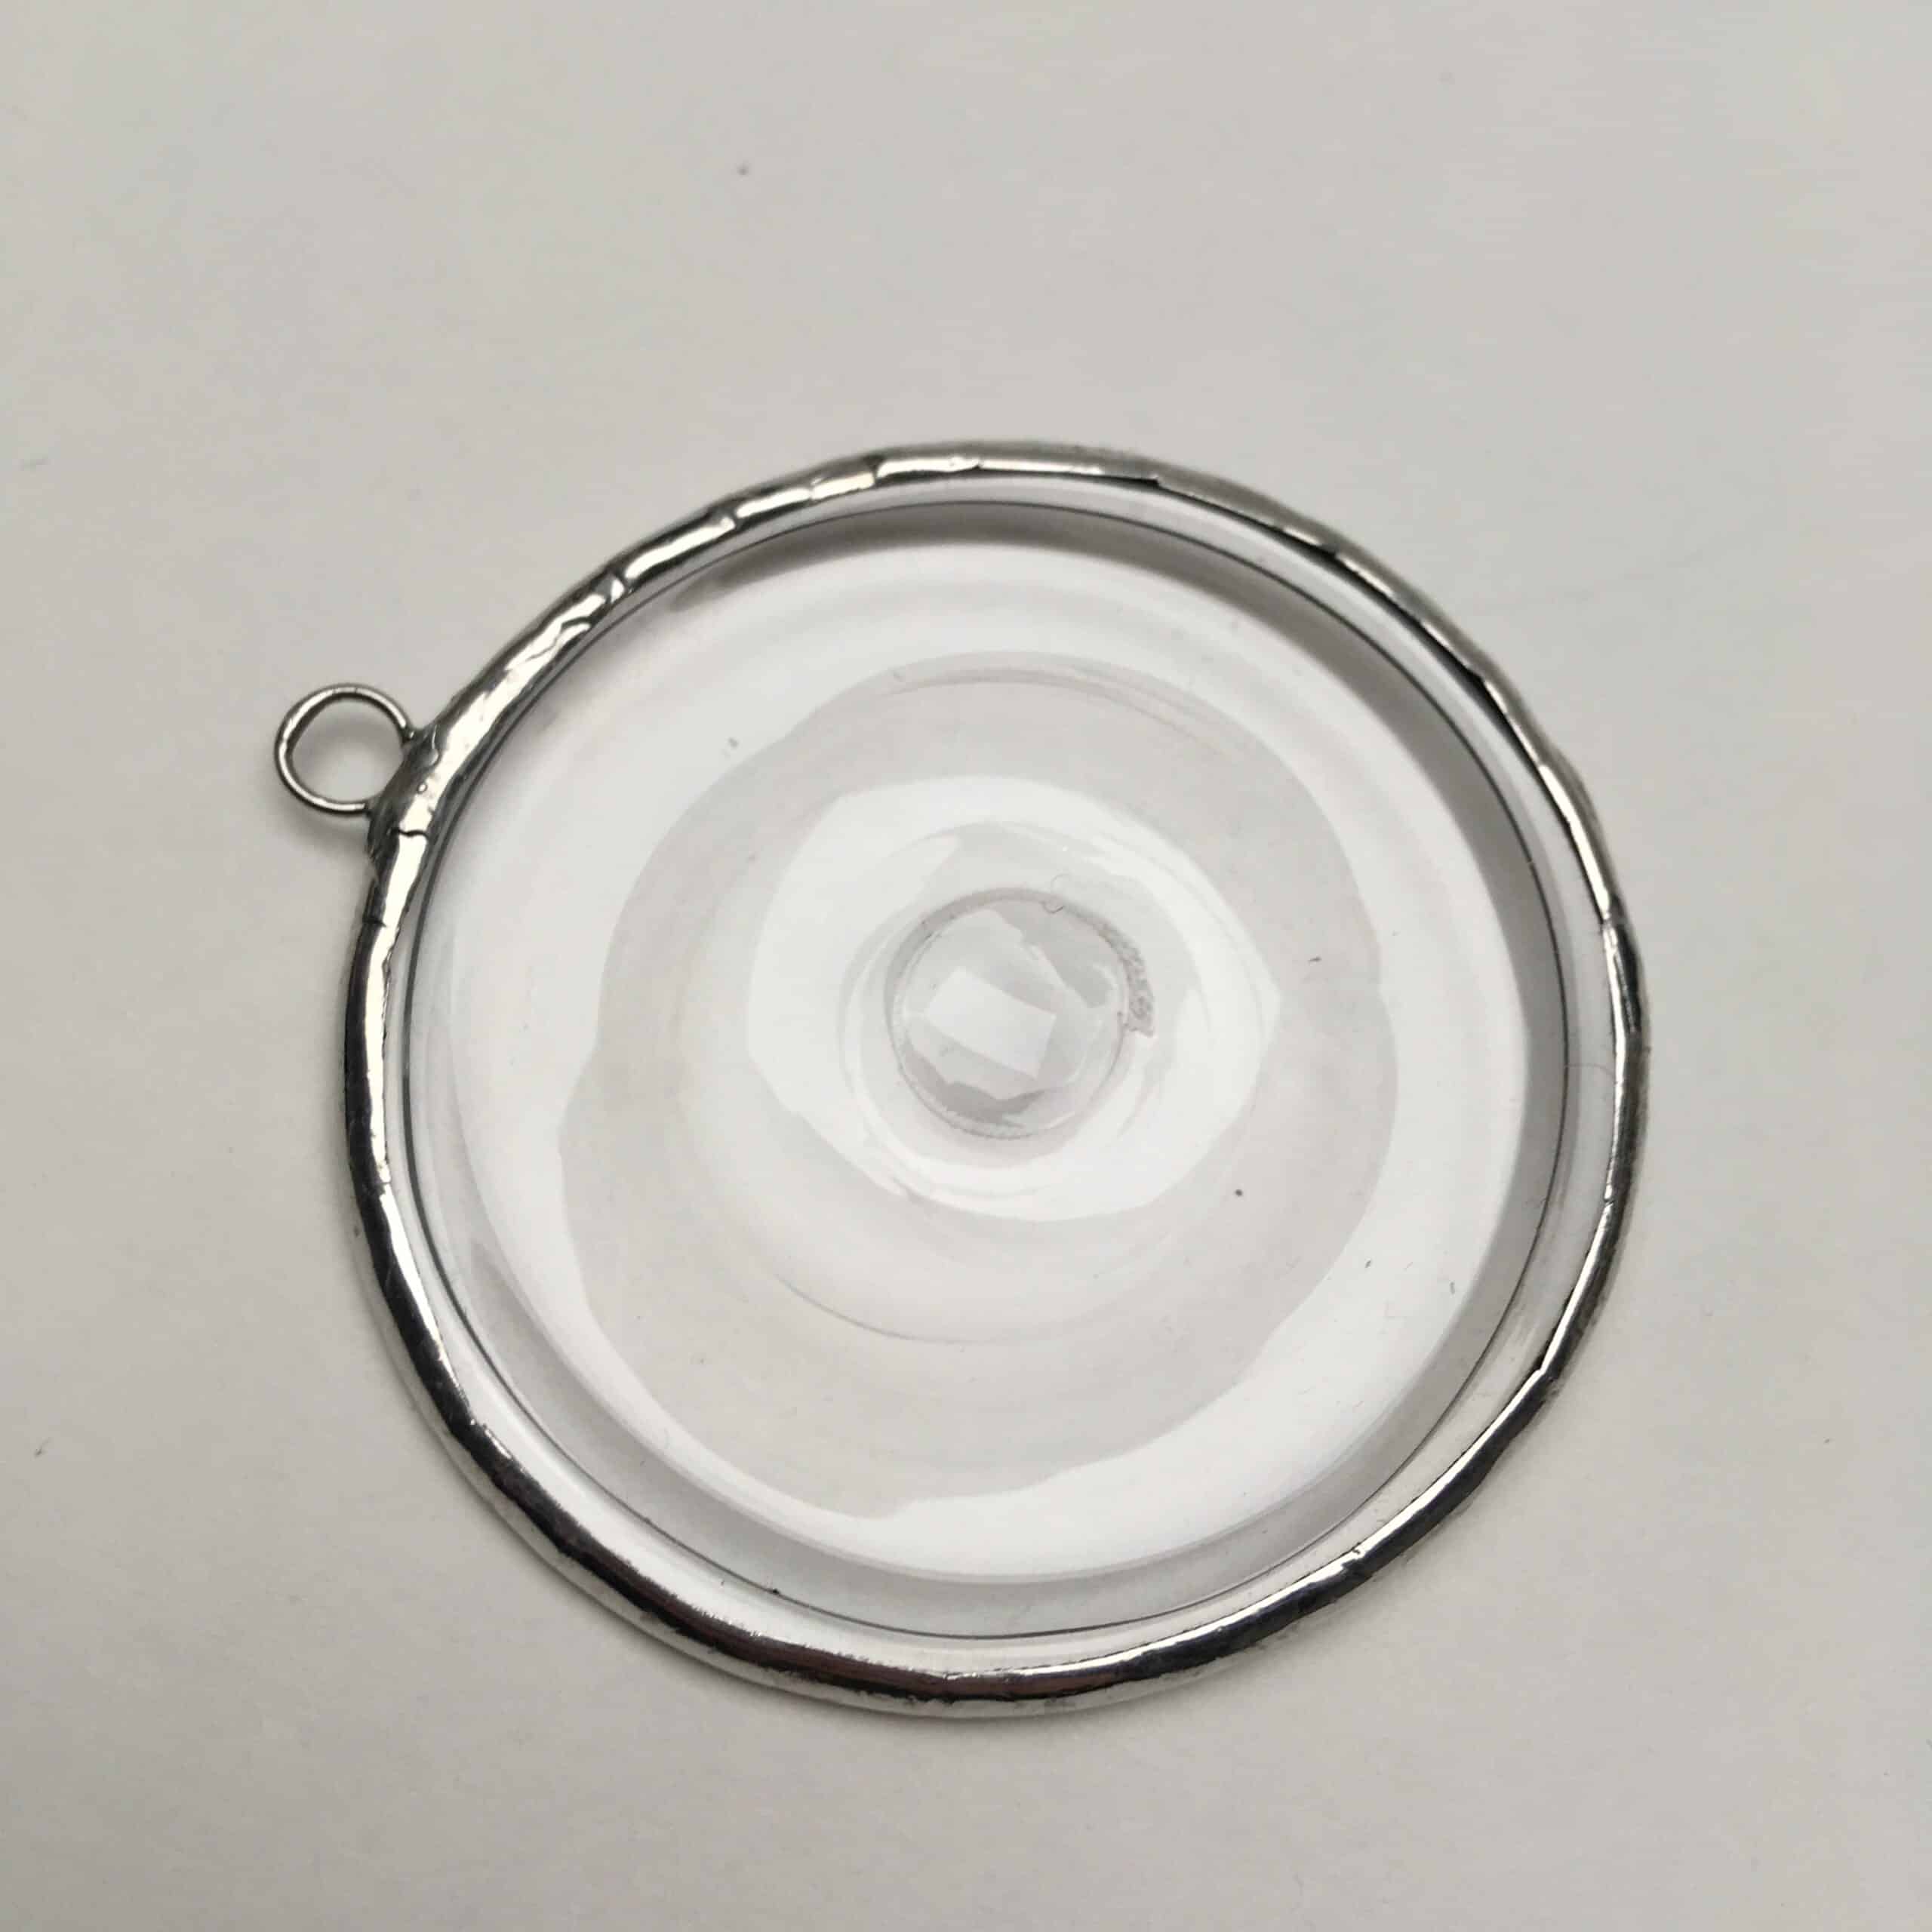 Coin de protection pour verre 5-6mm / 100p OV11071 : Vente de produits pour  le travail du verre (Vitrail, Tiffany, fusing)